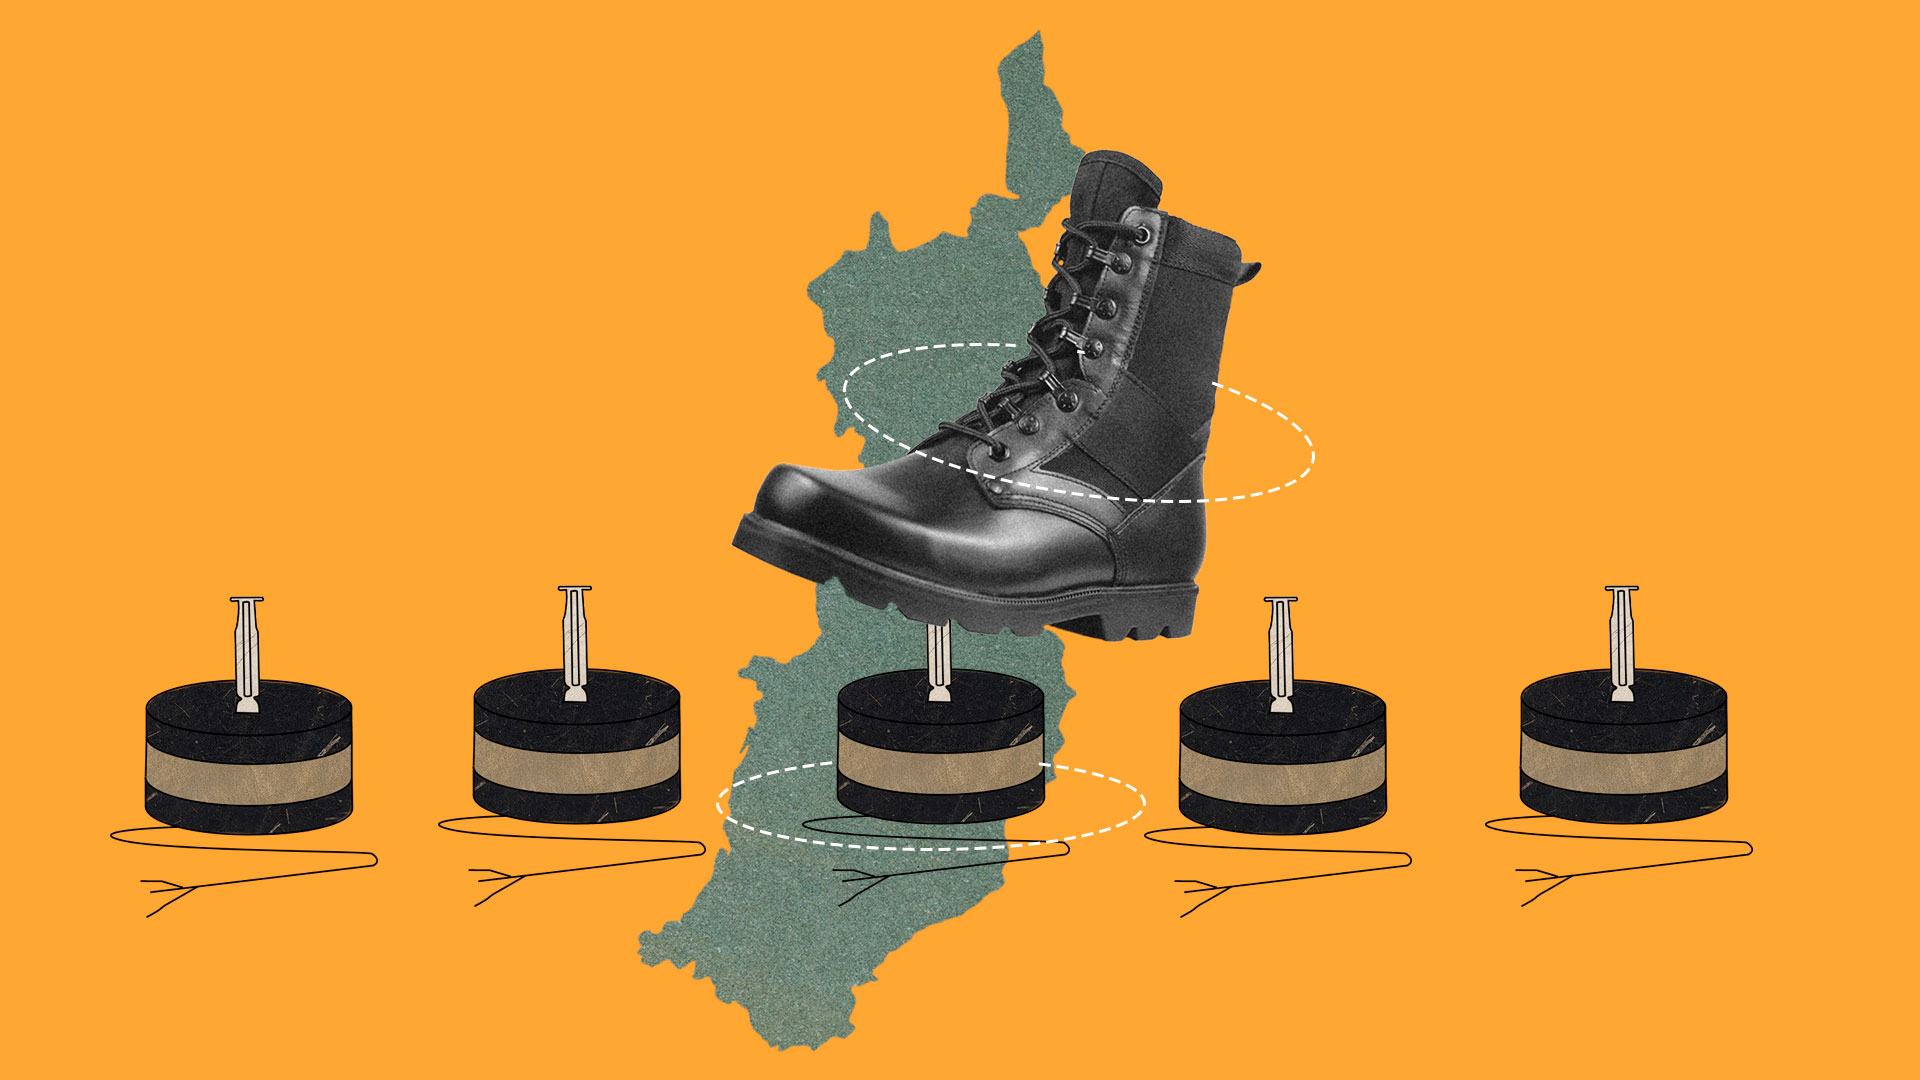 Comunidades de la zona rural están en riesgo de desplazamiento por minas antipersonal